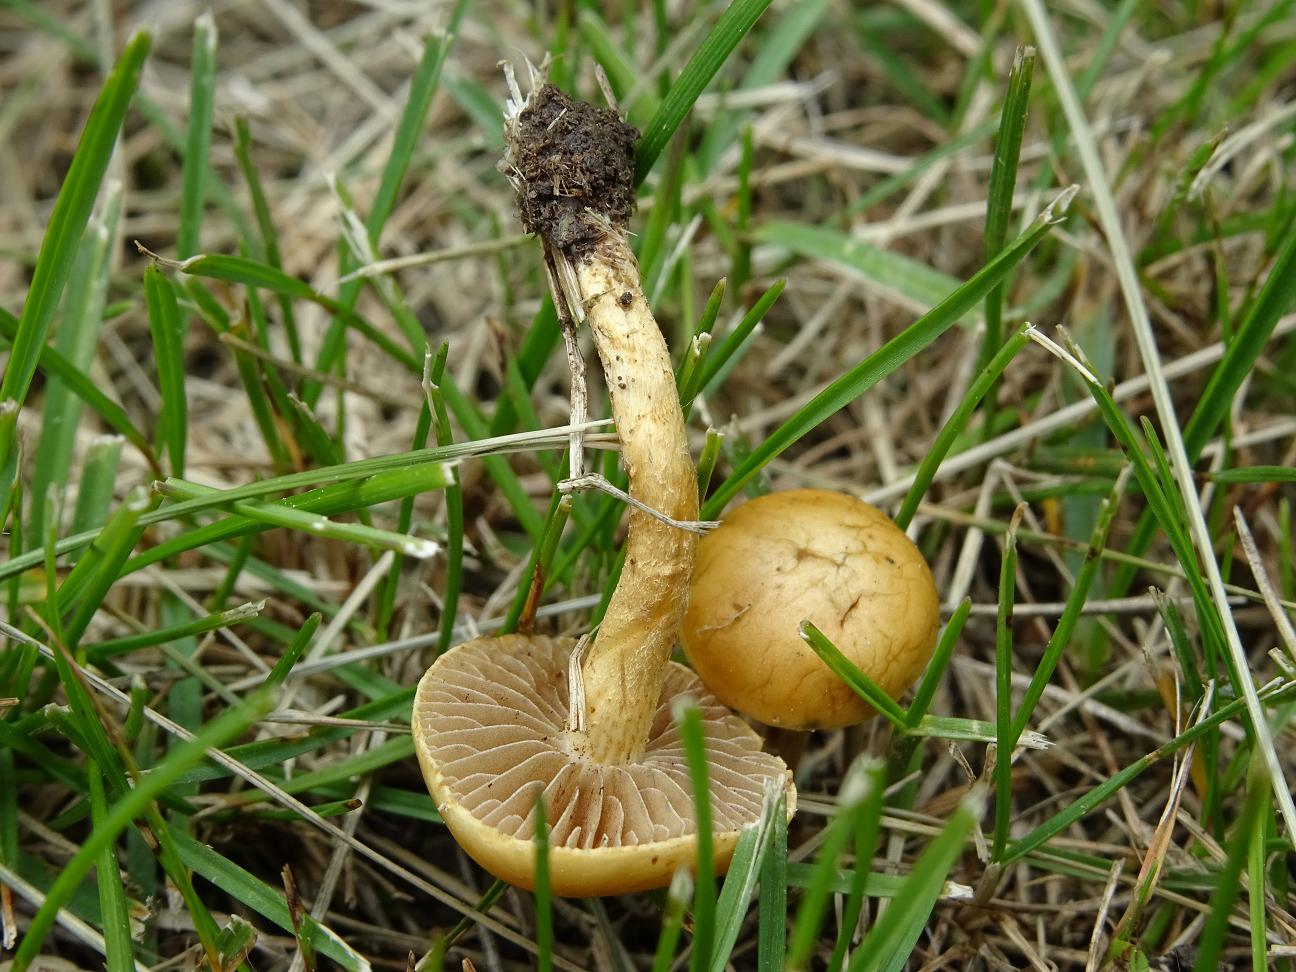 Syn.: Agrocybe semiorbicularis. Агроцибе стоповидная. Софийская область, 14 мая. Автор фото: Кирилова Любовь